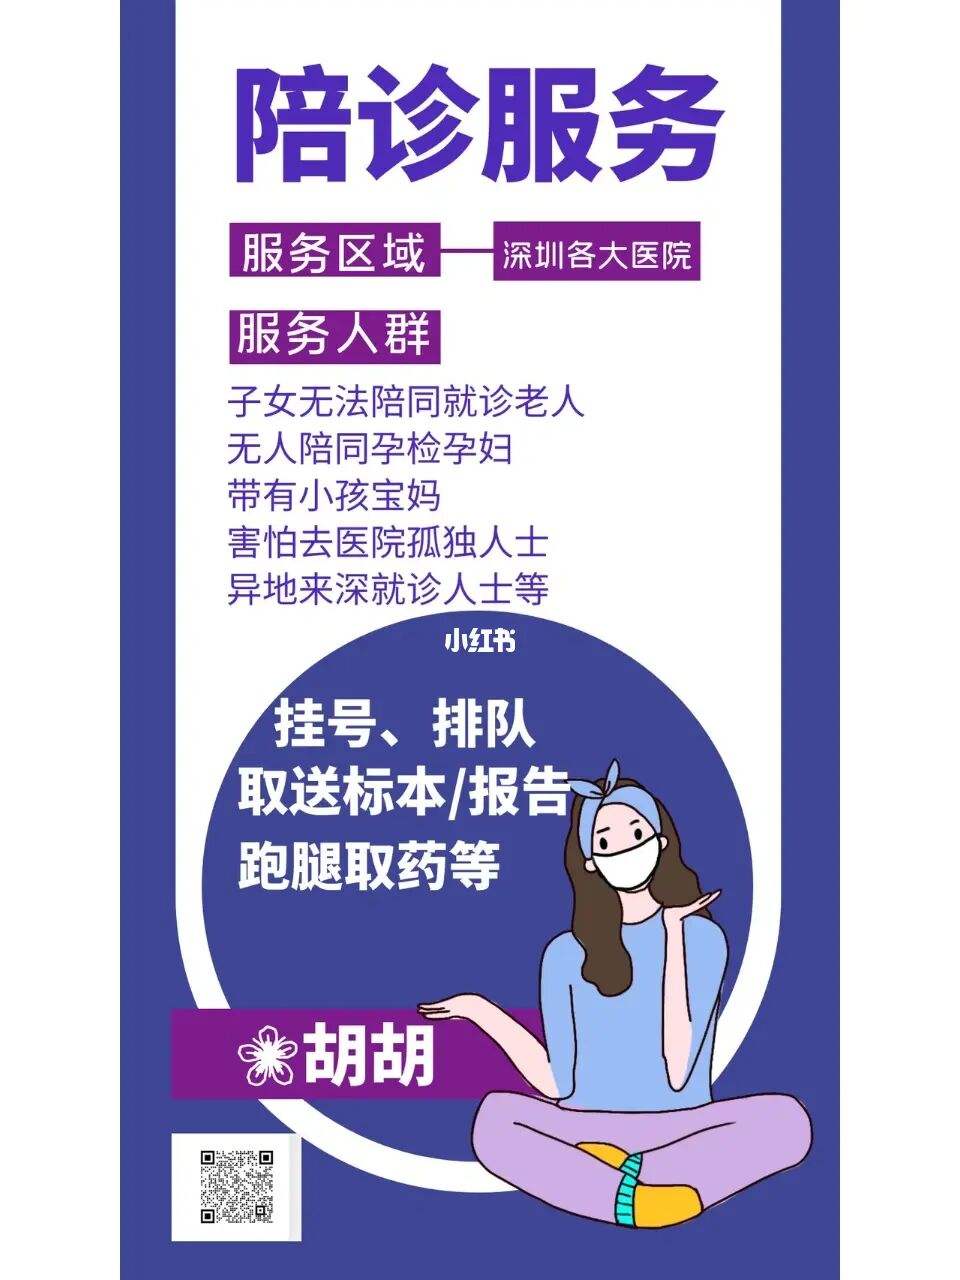 关于上海市中医医院医院跑腿陪诊挂号，助您医路轻松的信息